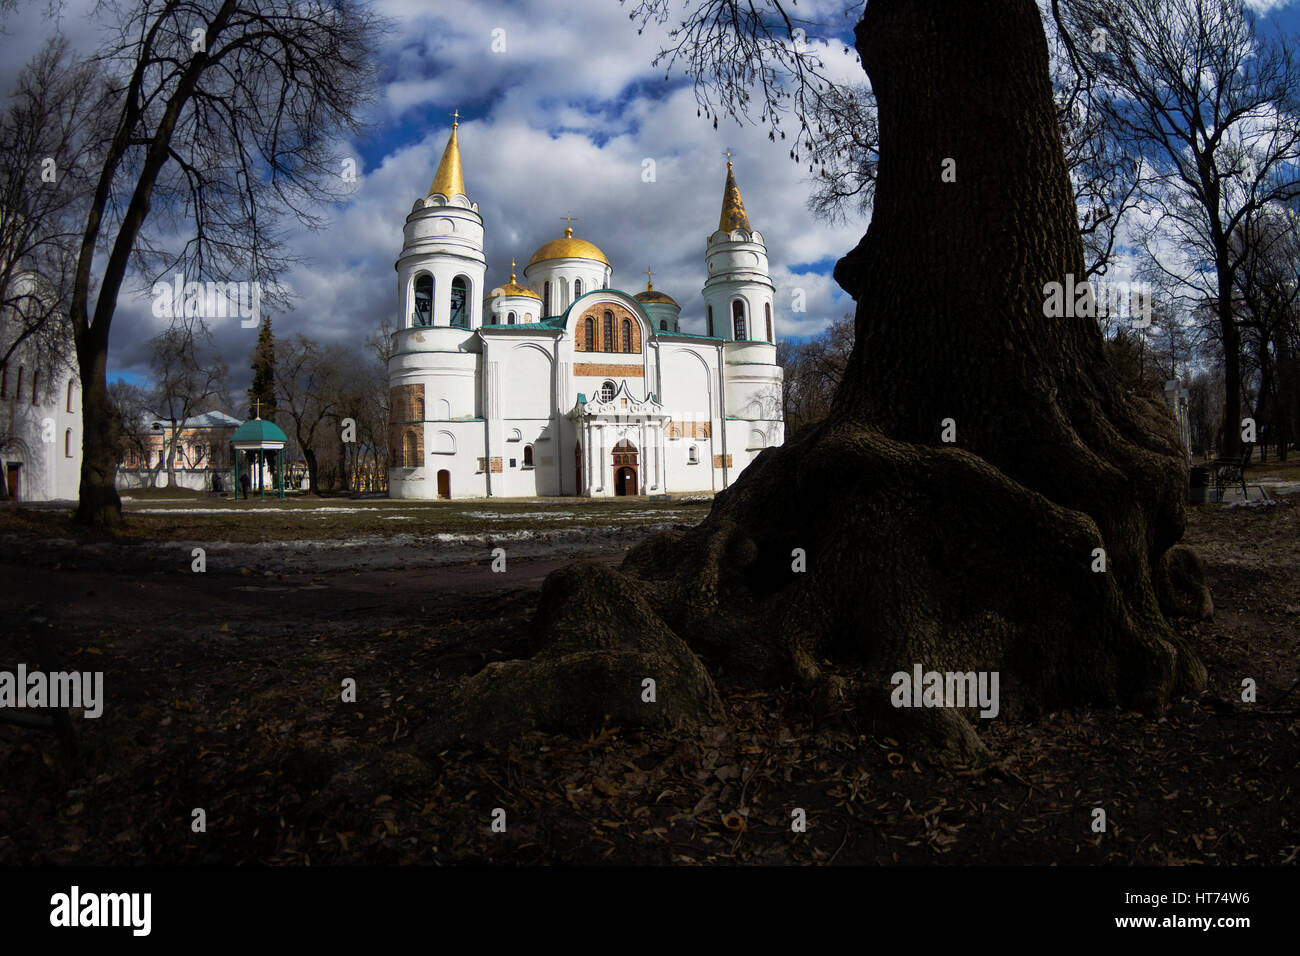 La trasfigurazione della Cattedrale di Chernigiv nel giorno di primavera, cielo nuvoloso, con il vecchio albero, Marzo, Ucraina Foto Stock